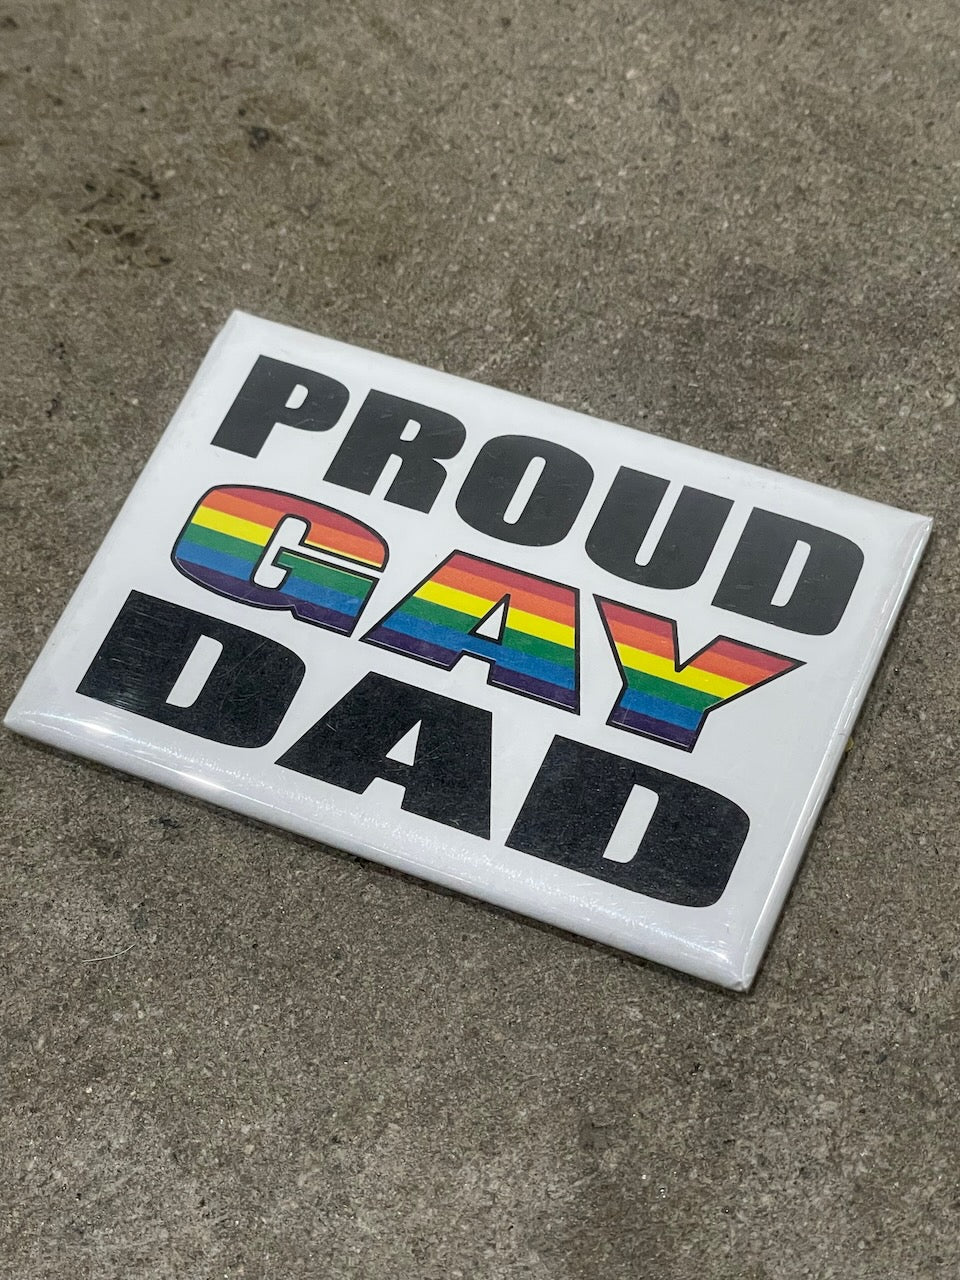 PROUD GAY DAD Magnet